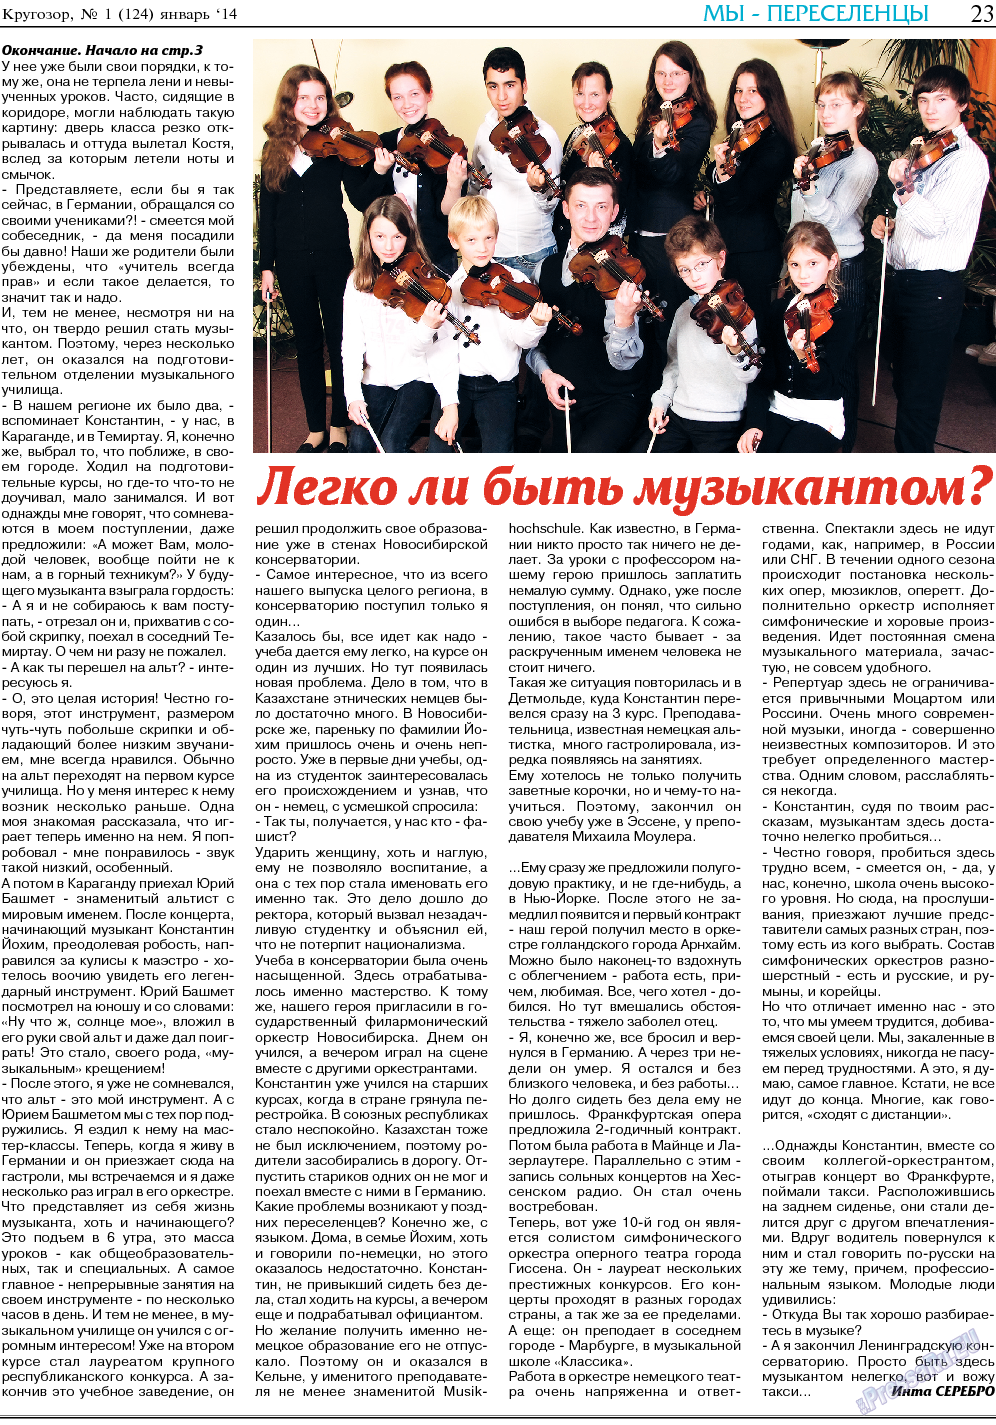 Кругозор, газета. 2014 №1 стр.23